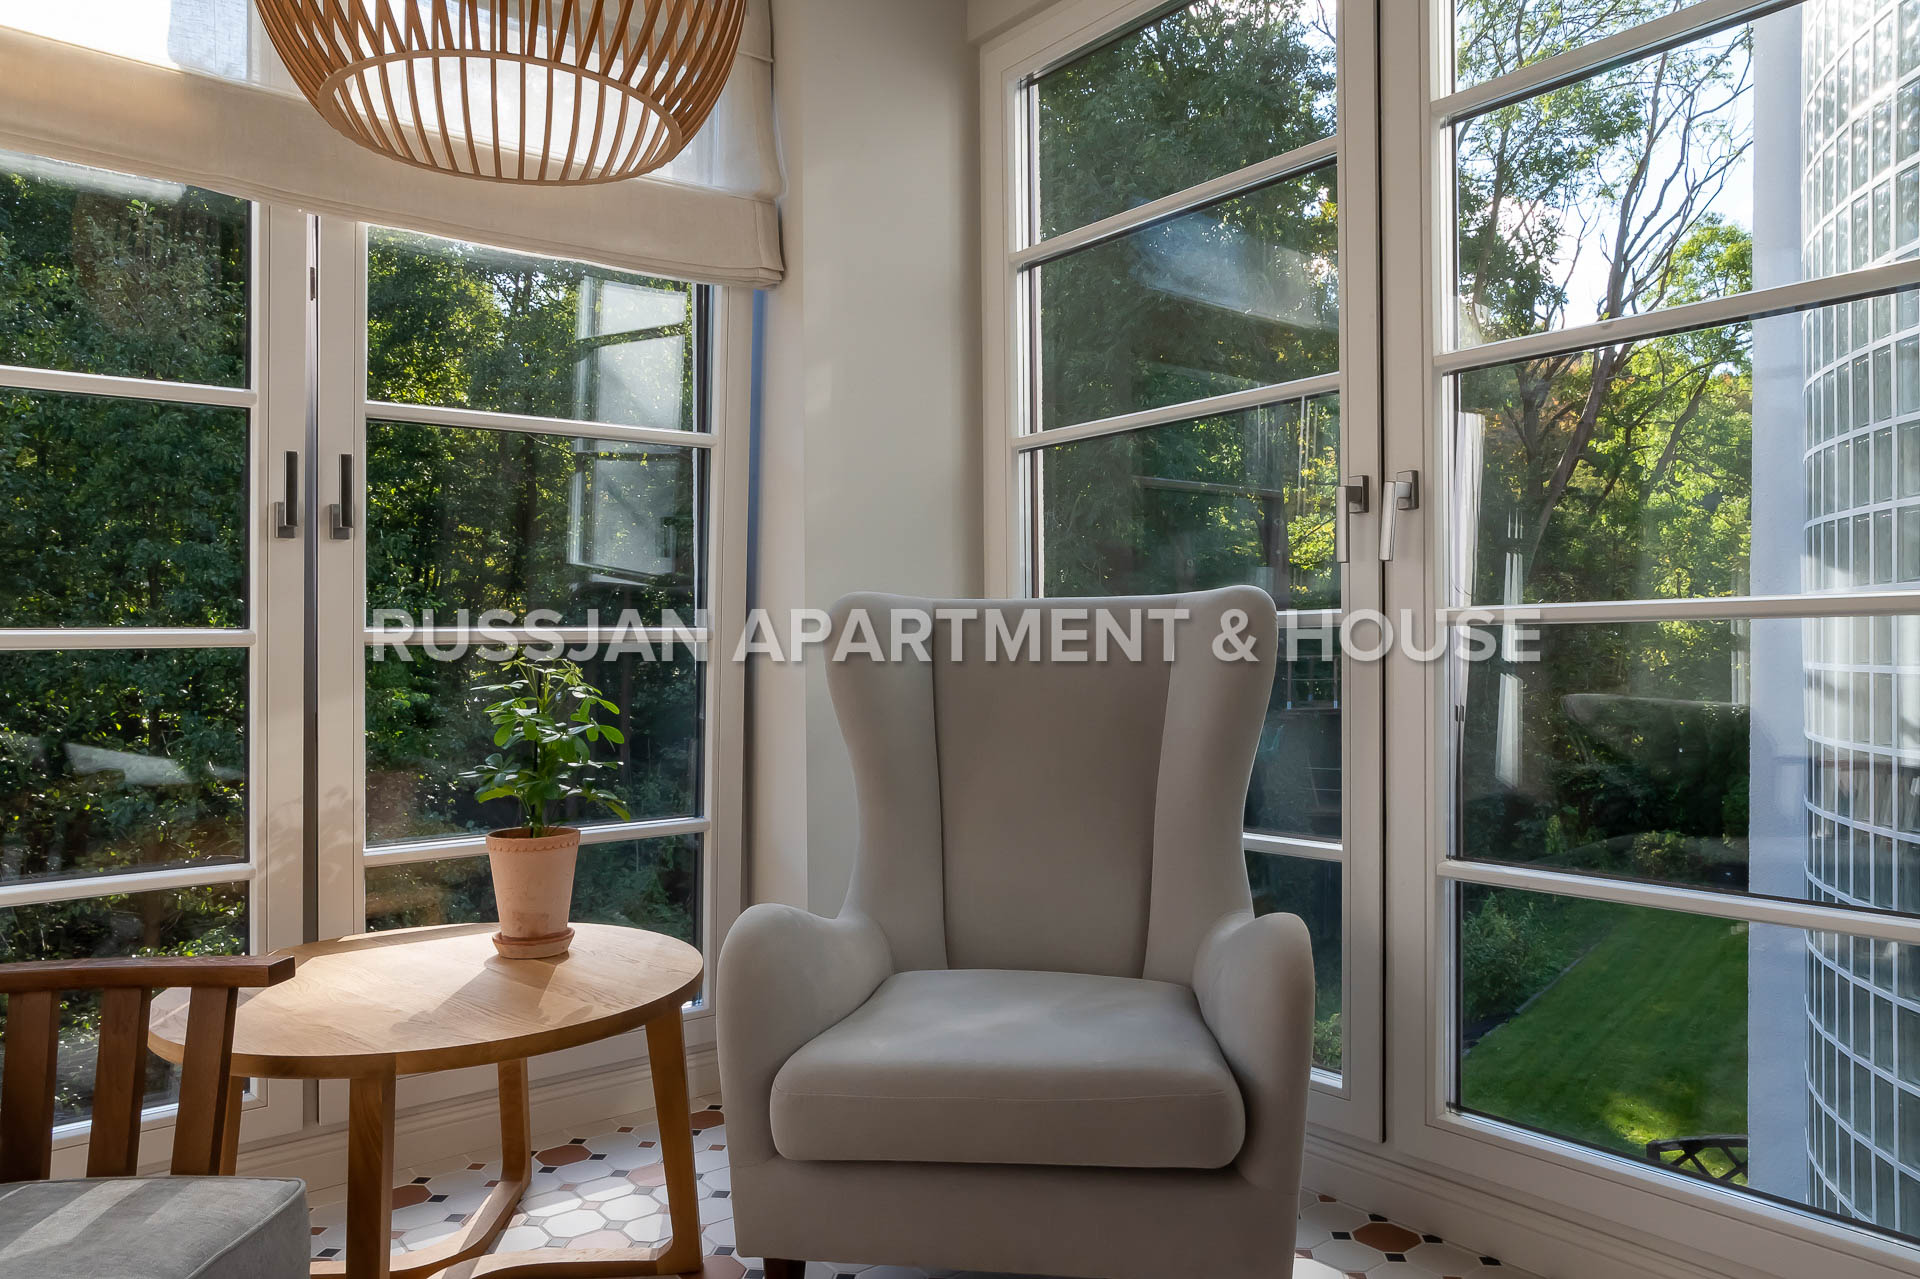  Ulica Bernadowska | RUSSJAN Apartment & House